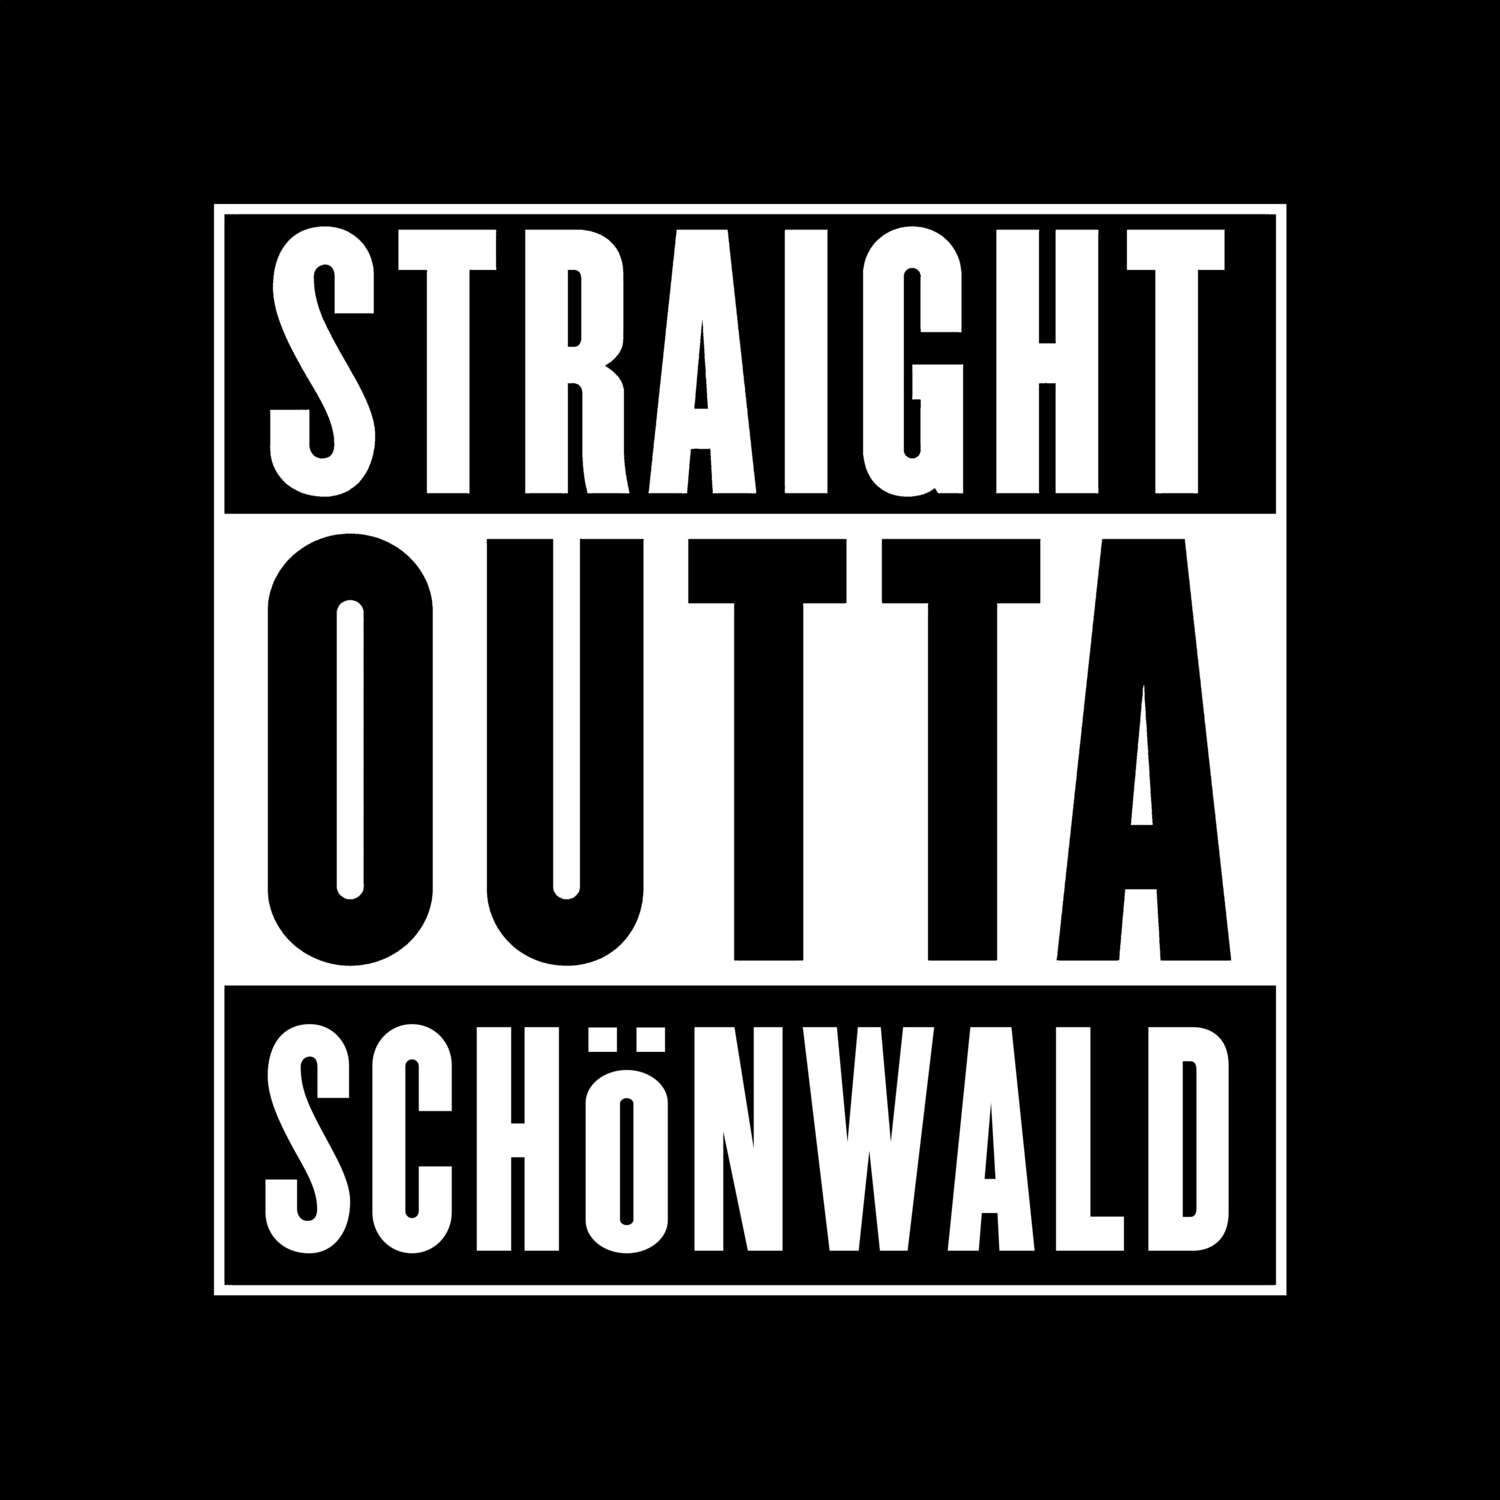 Schönwald T-Shirt »Straight Outta«